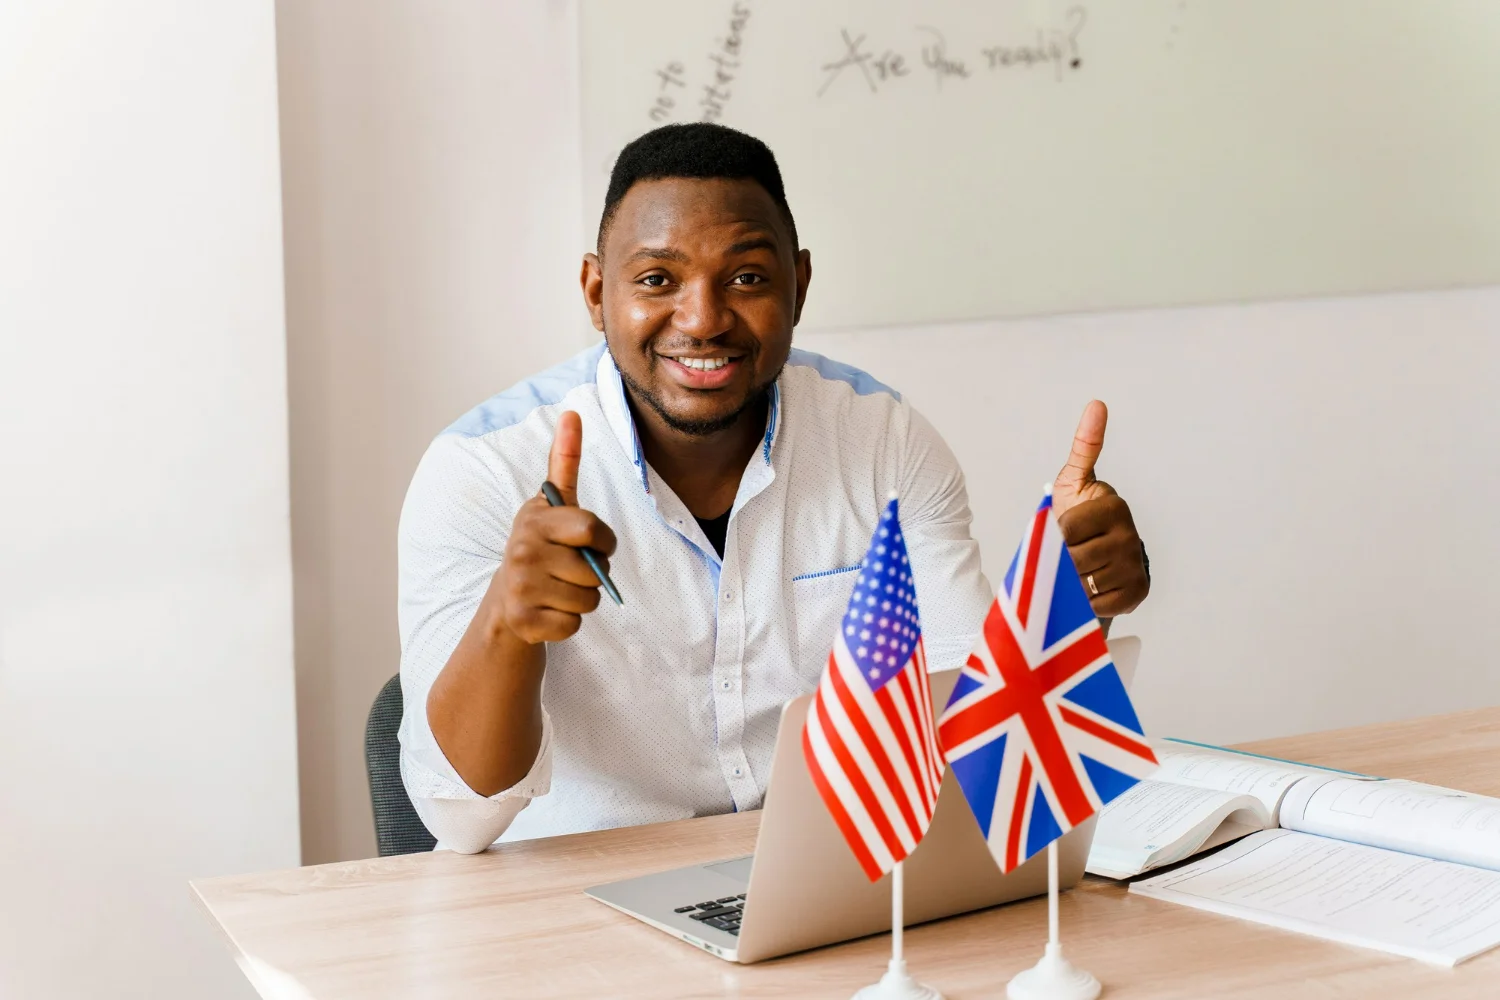 Algumas diferenças entre o inglês americano e inglês britânico